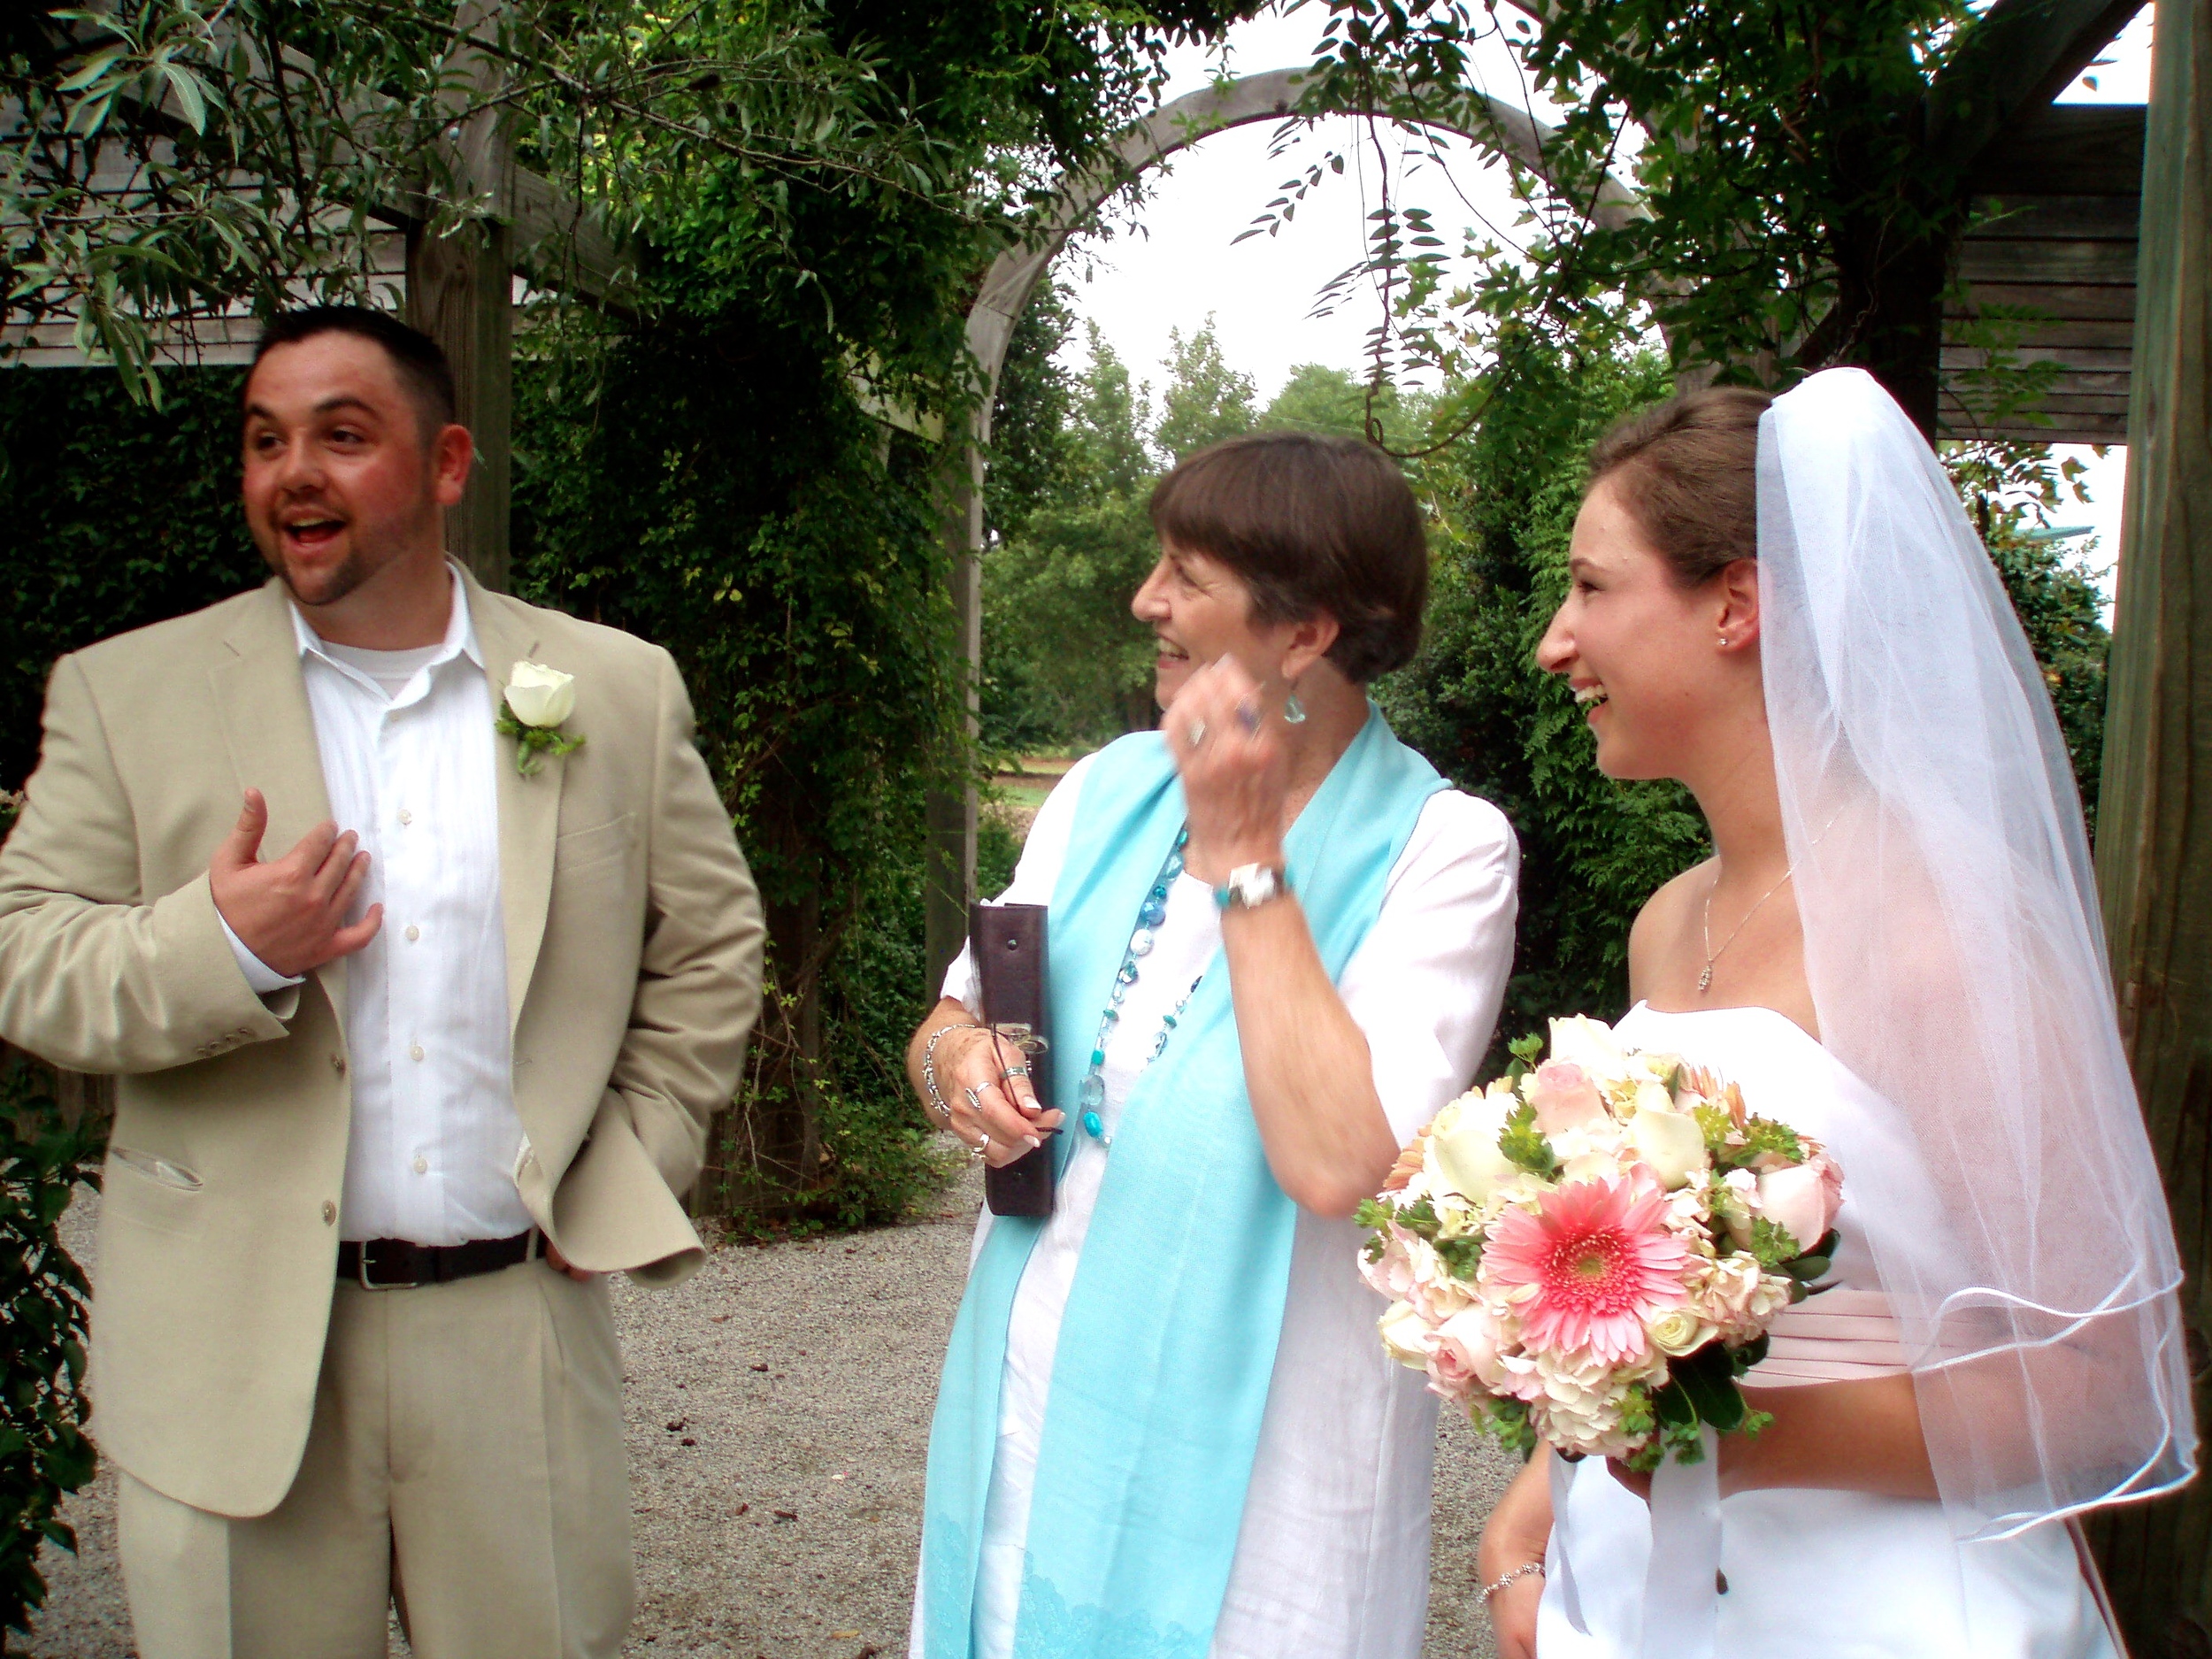 Wedding at The White Garden, JC Raulston Arboretum, Raleigh NC